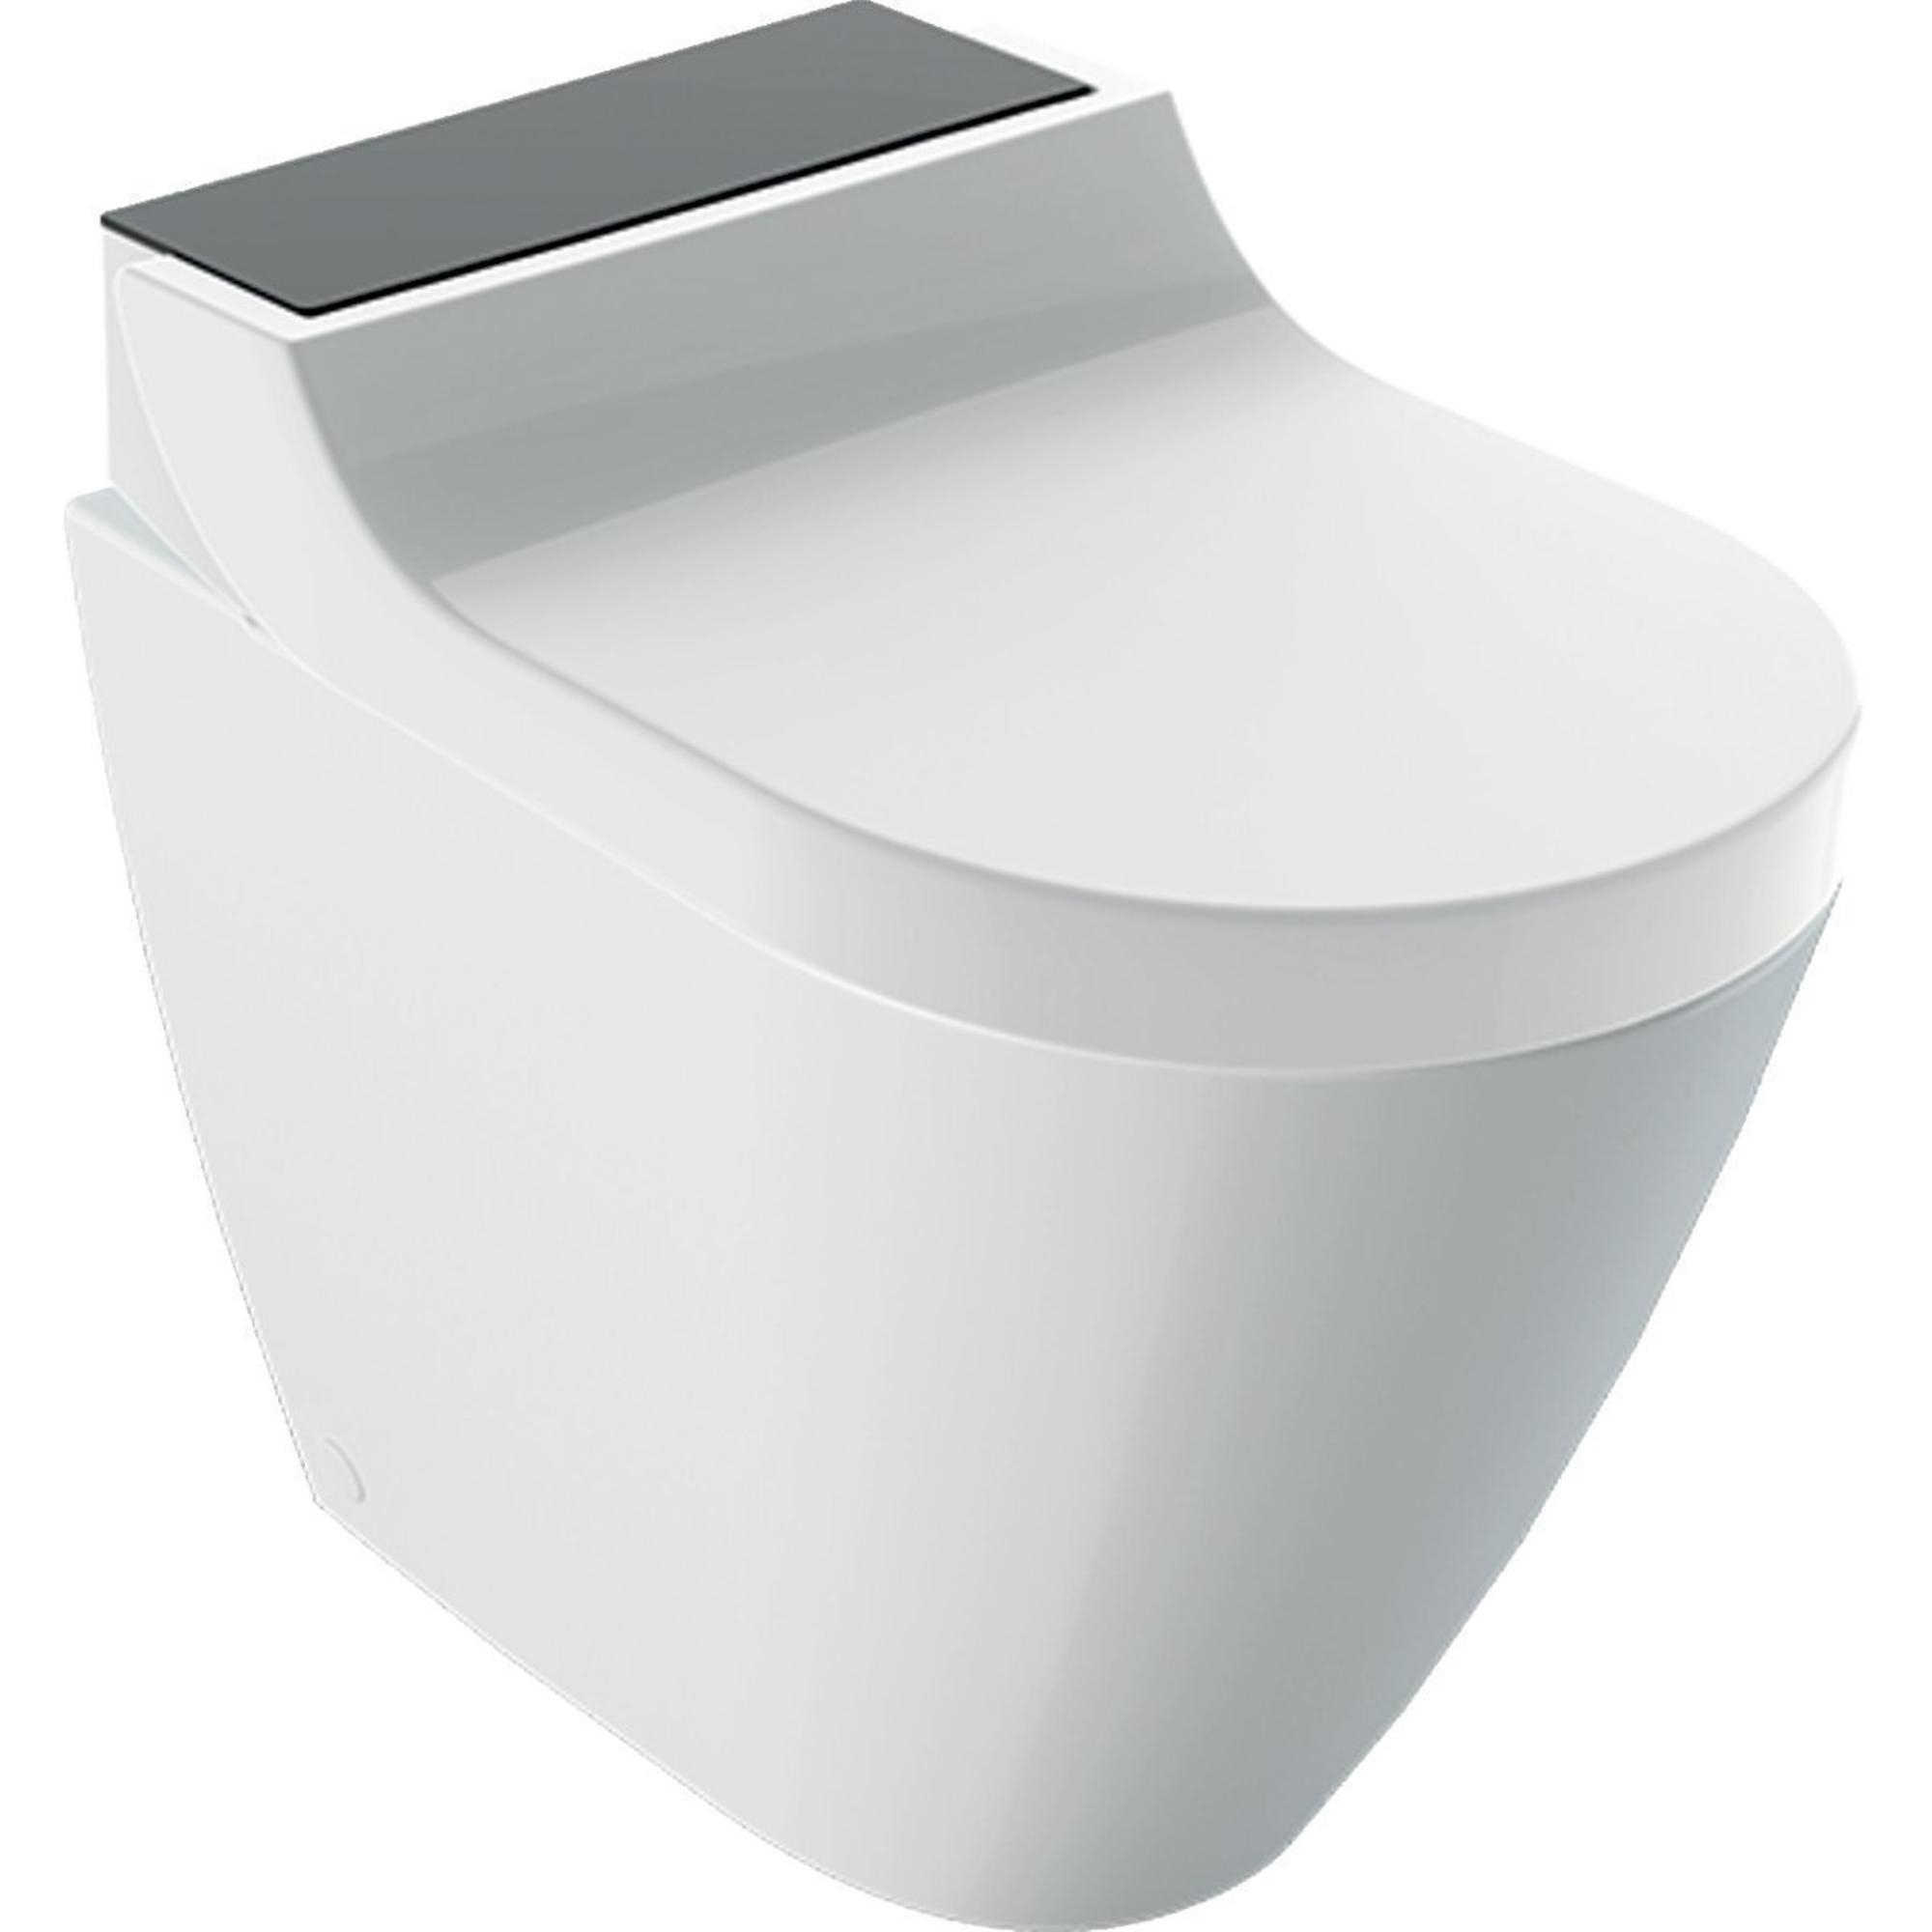 La cuvette de WC chauffante : la dernière technologie à ajouter à